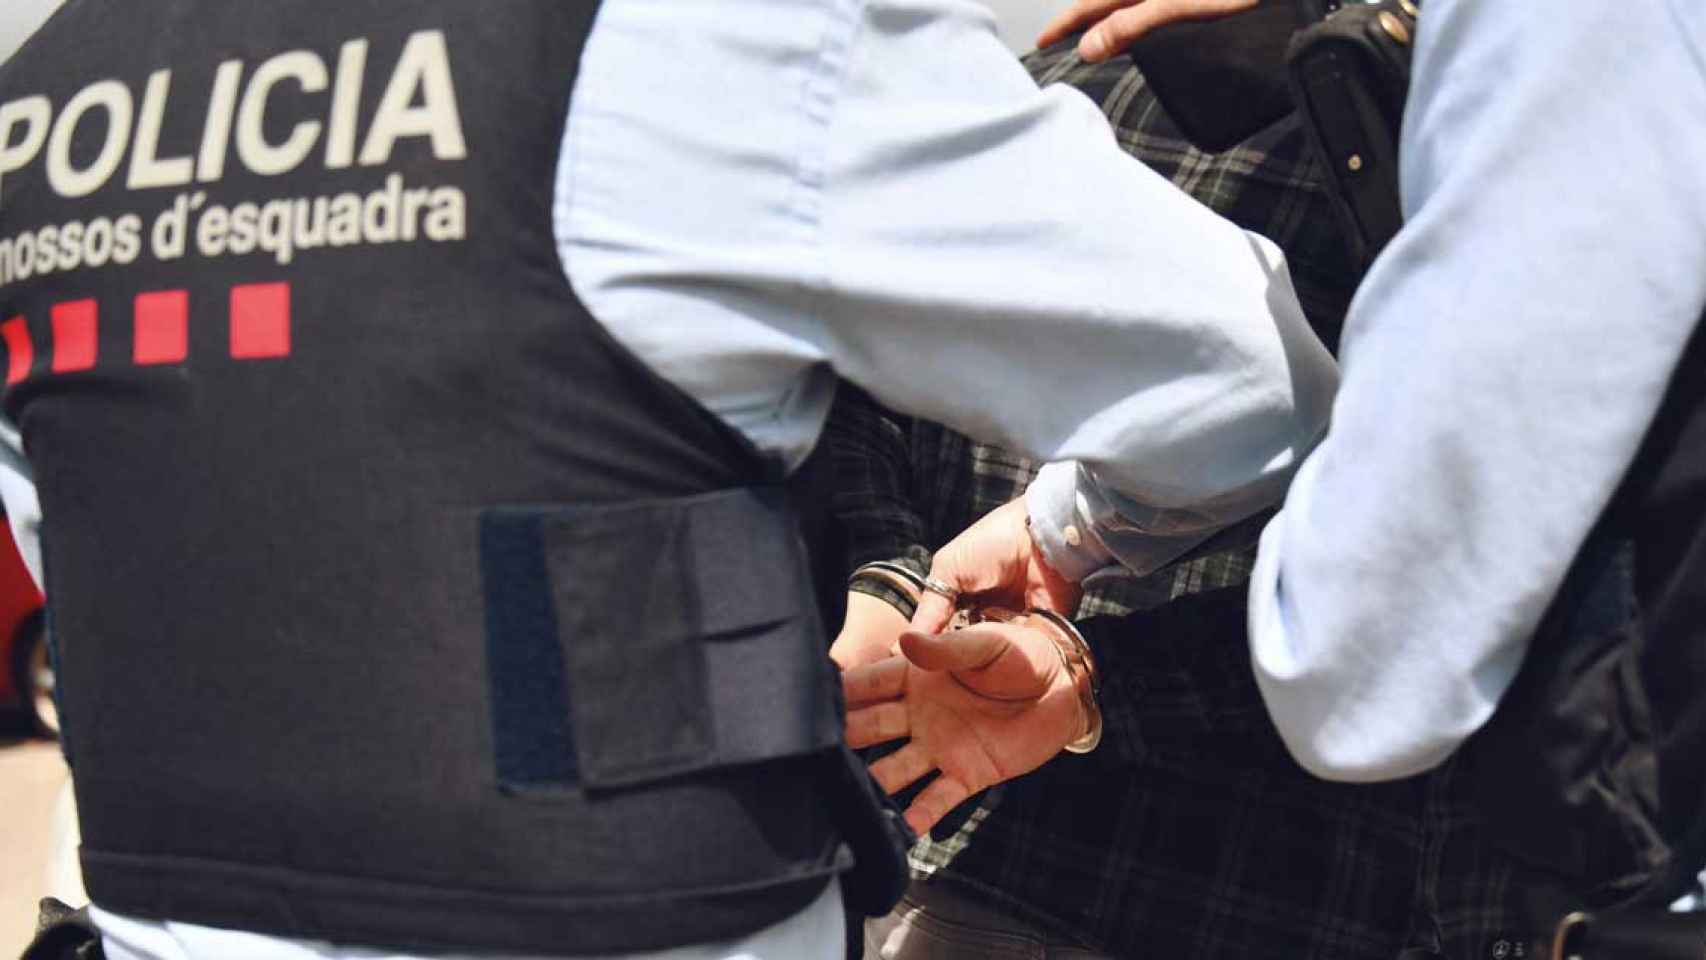 Los mossos han detenido al autor de una presunta violación a una menor en La Selva del Camp / EUROPA PRESS